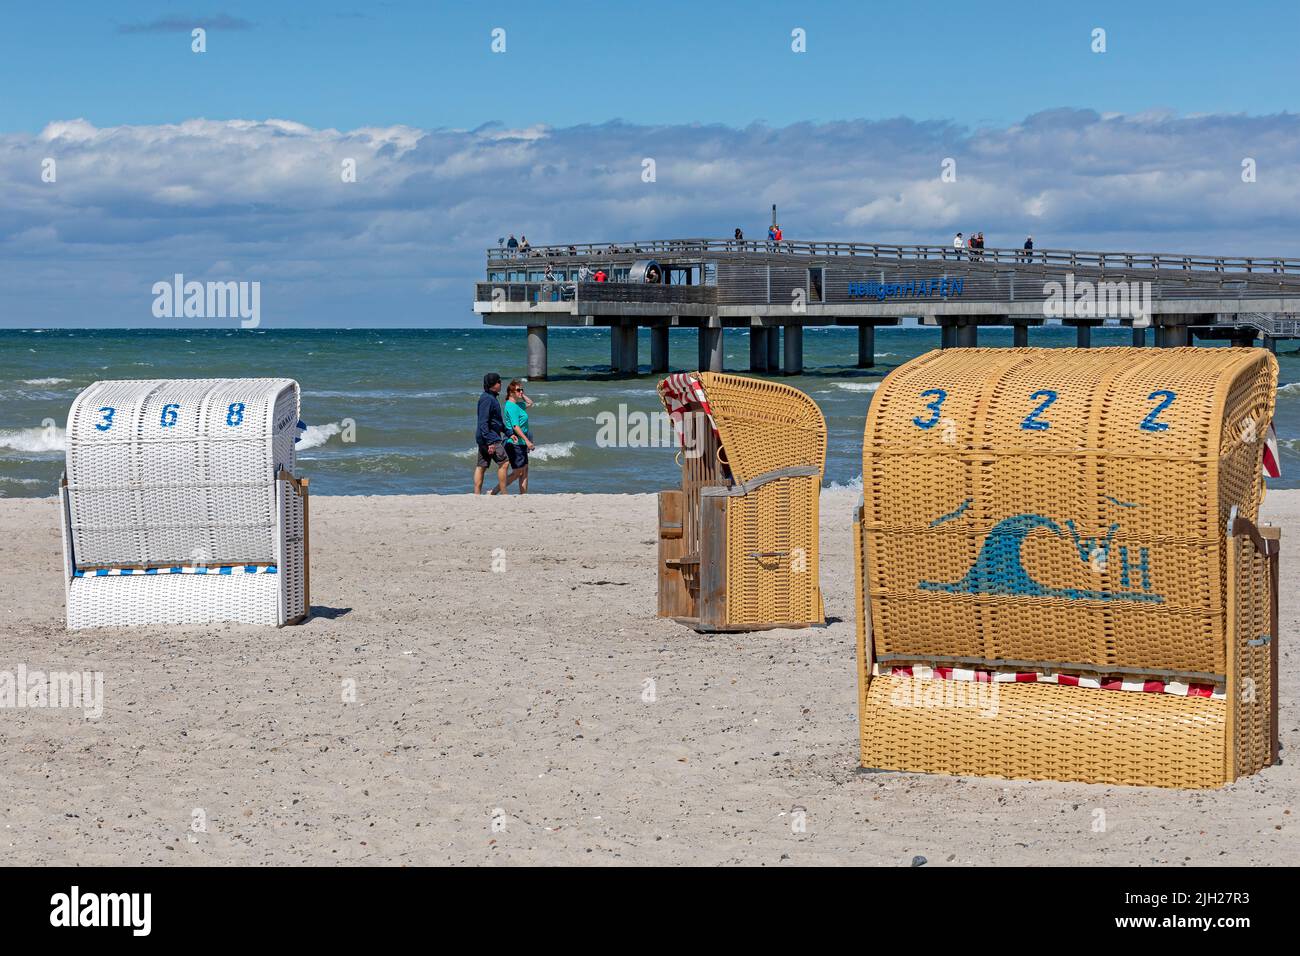 Pier, beach chairs, Steinwarder Peninsula, Heiligenhafen, Schleswig-Holstein, Germany Stock Photo